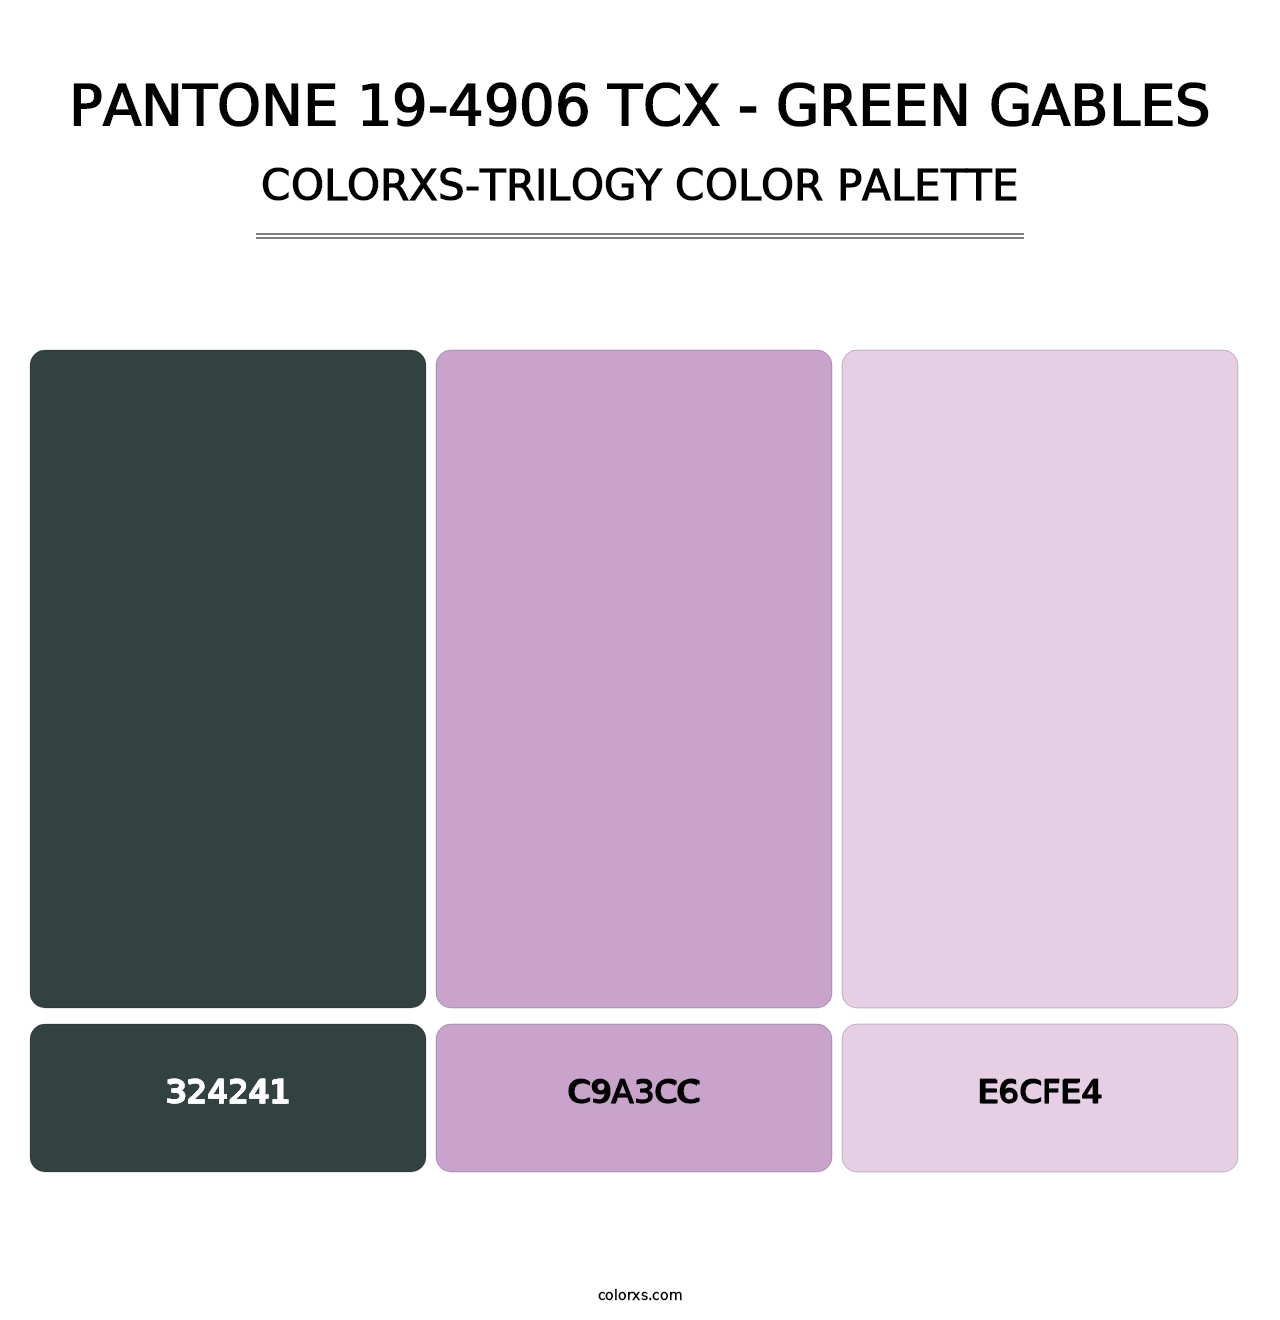 PANTONE 19-4906 TCX - Green Gables - Colorxs Trilogy Palette